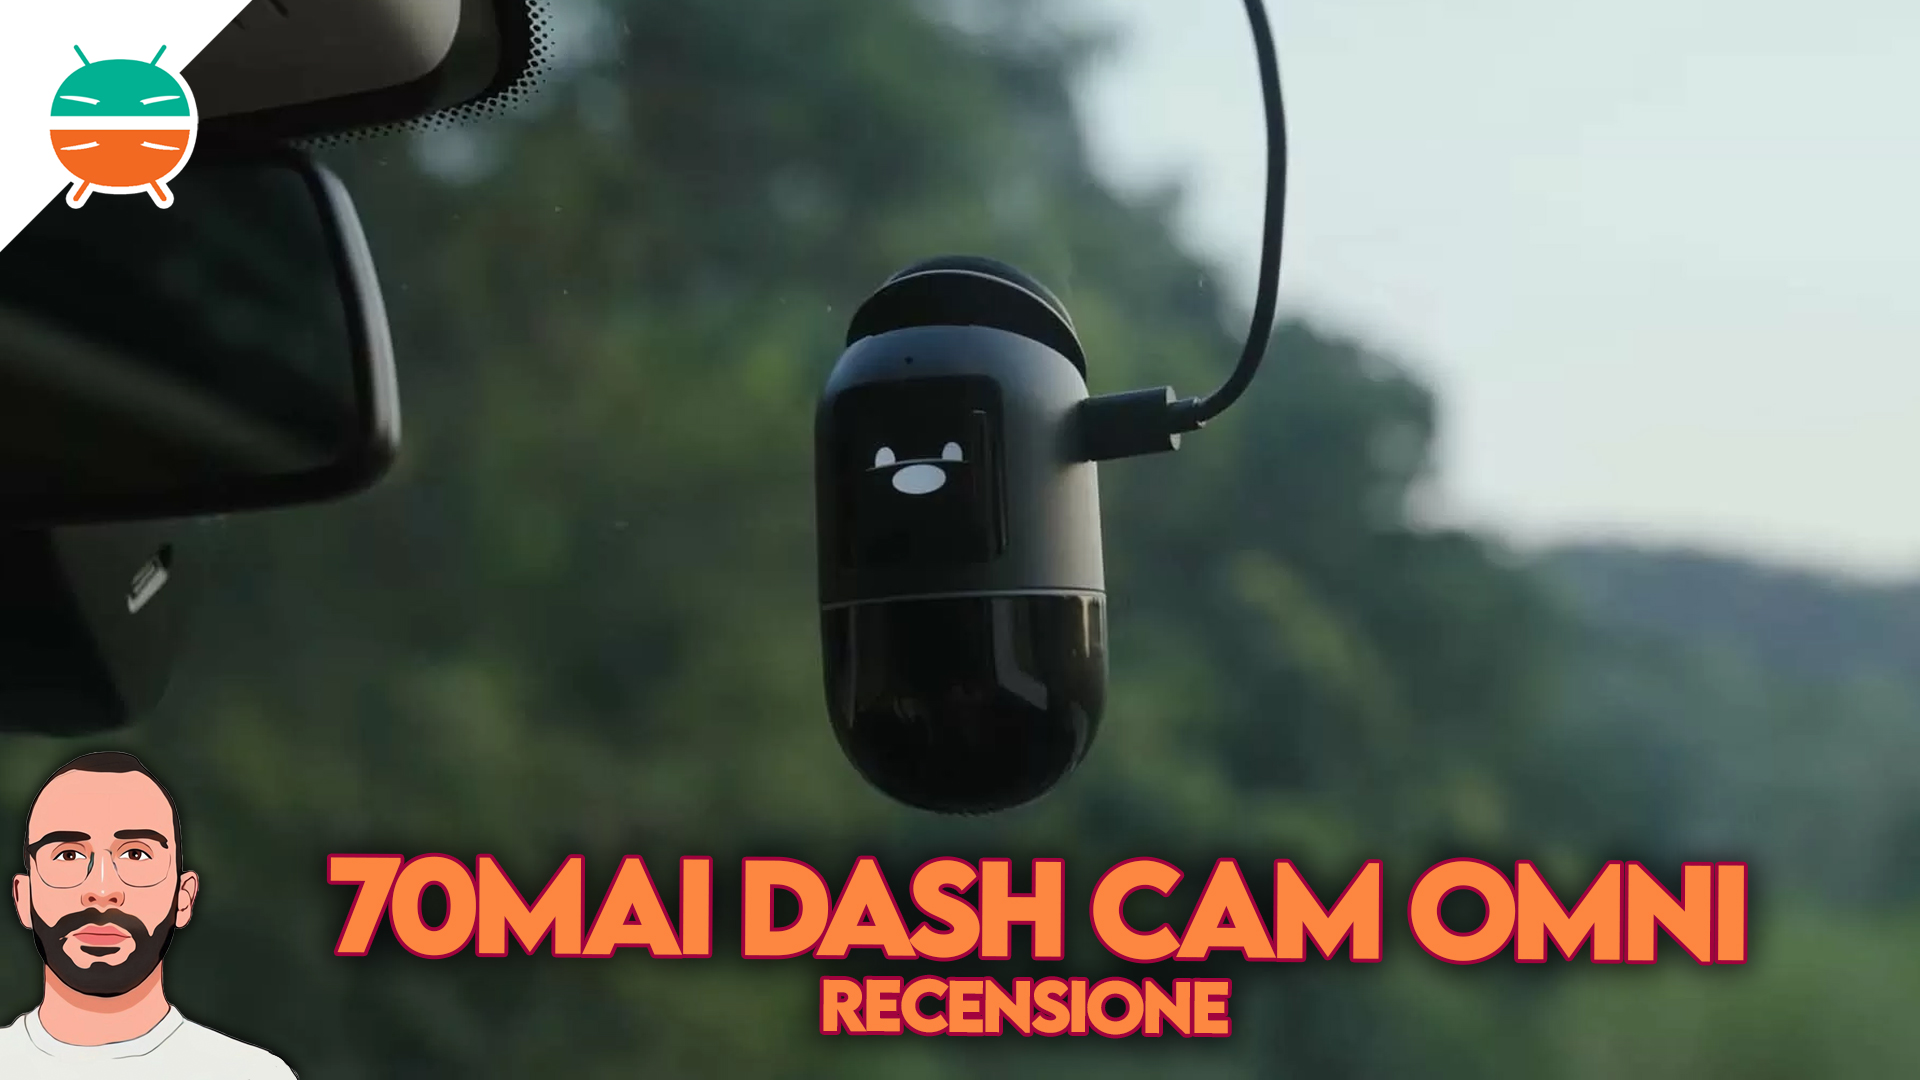 70mai Dash Cam Omni, Patented 360 Design, For Car Security